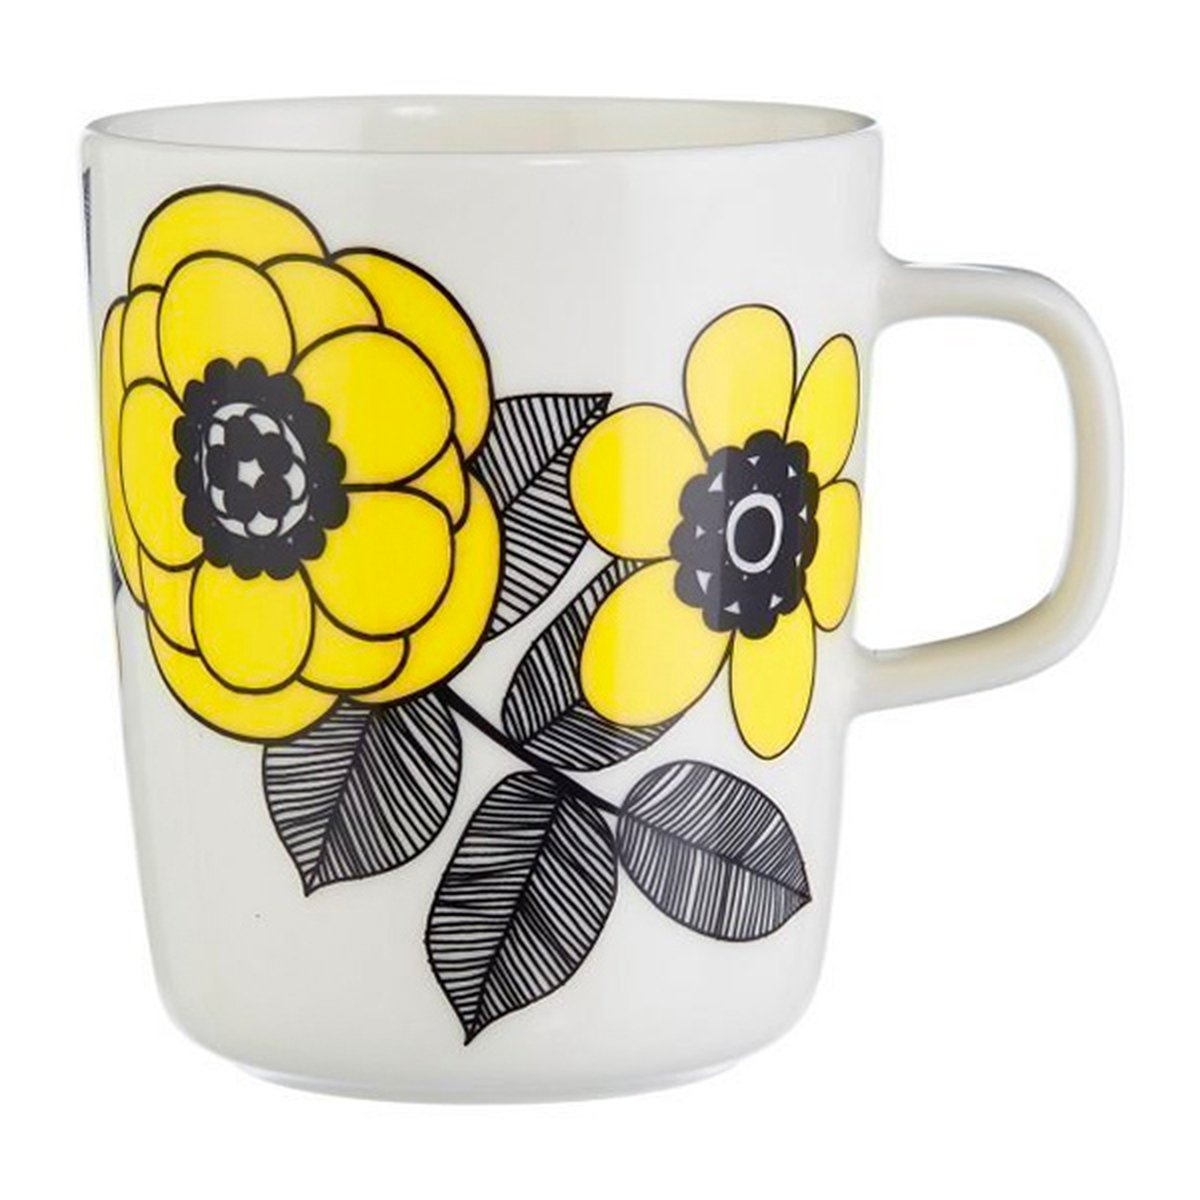 Marimekko Oiva - Kestit mug 2,5 dl, light yellow | Pre-used design |  Franckly